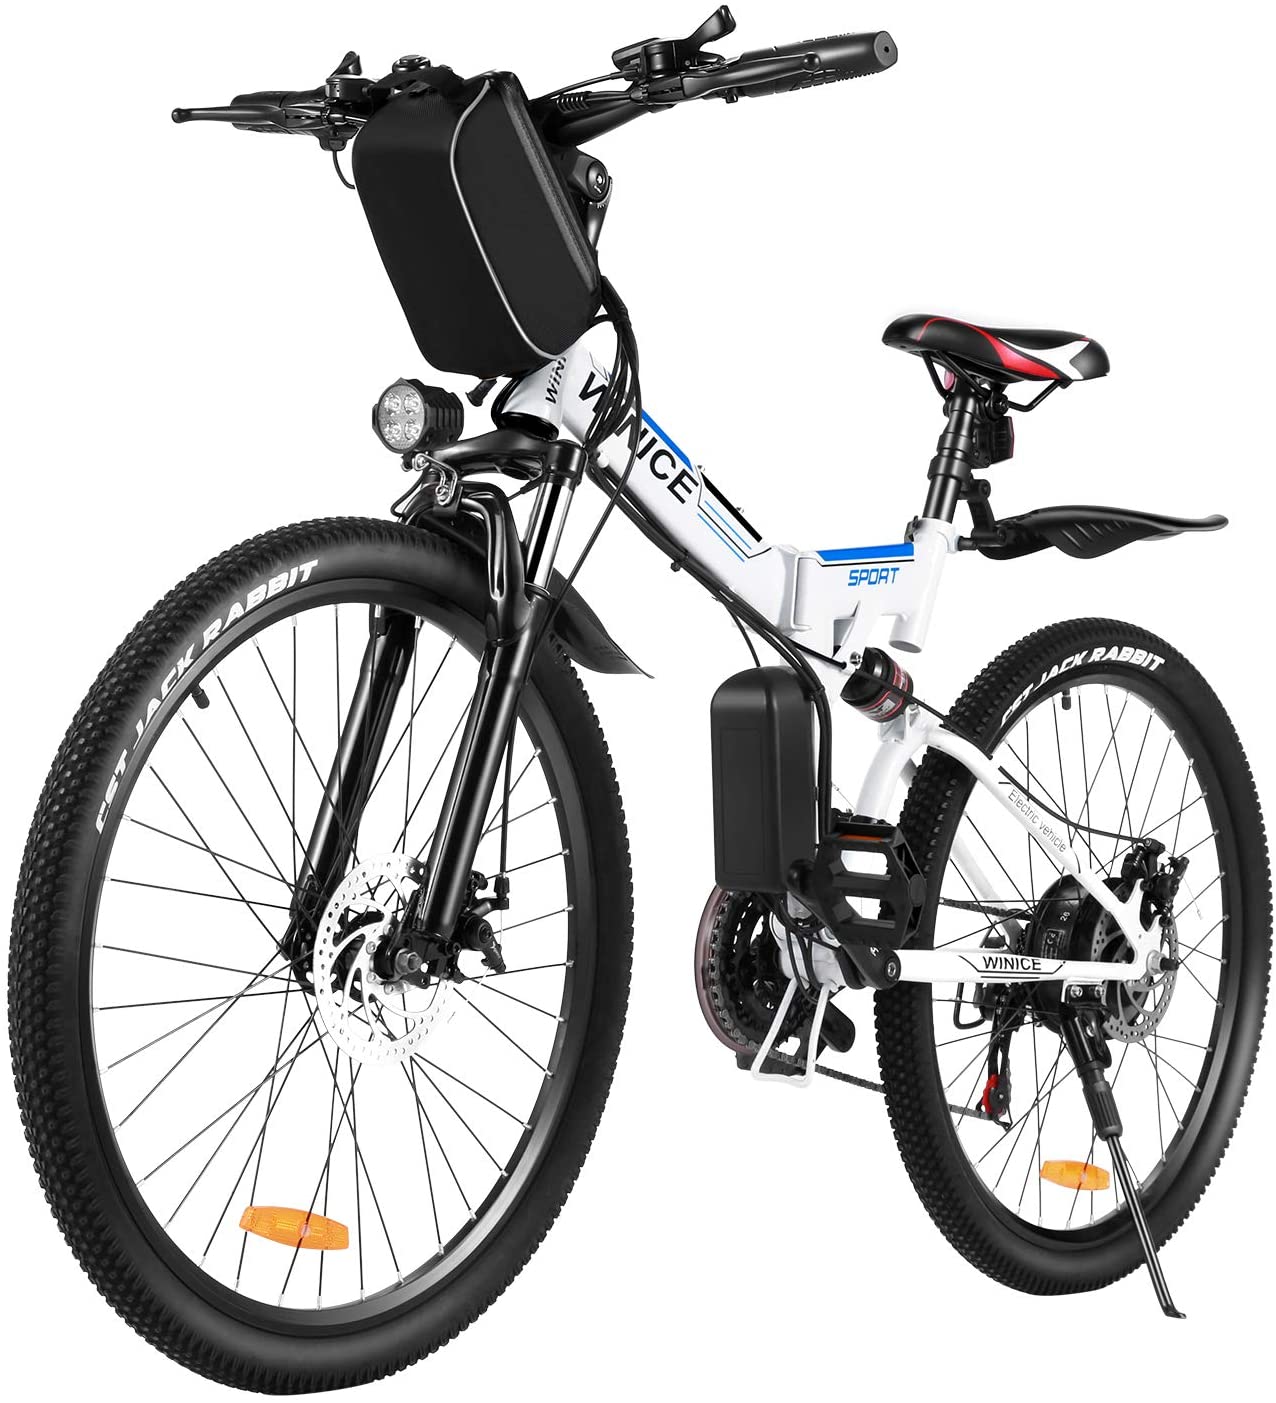 Vivi Electric Bike With Premium Full Suspension